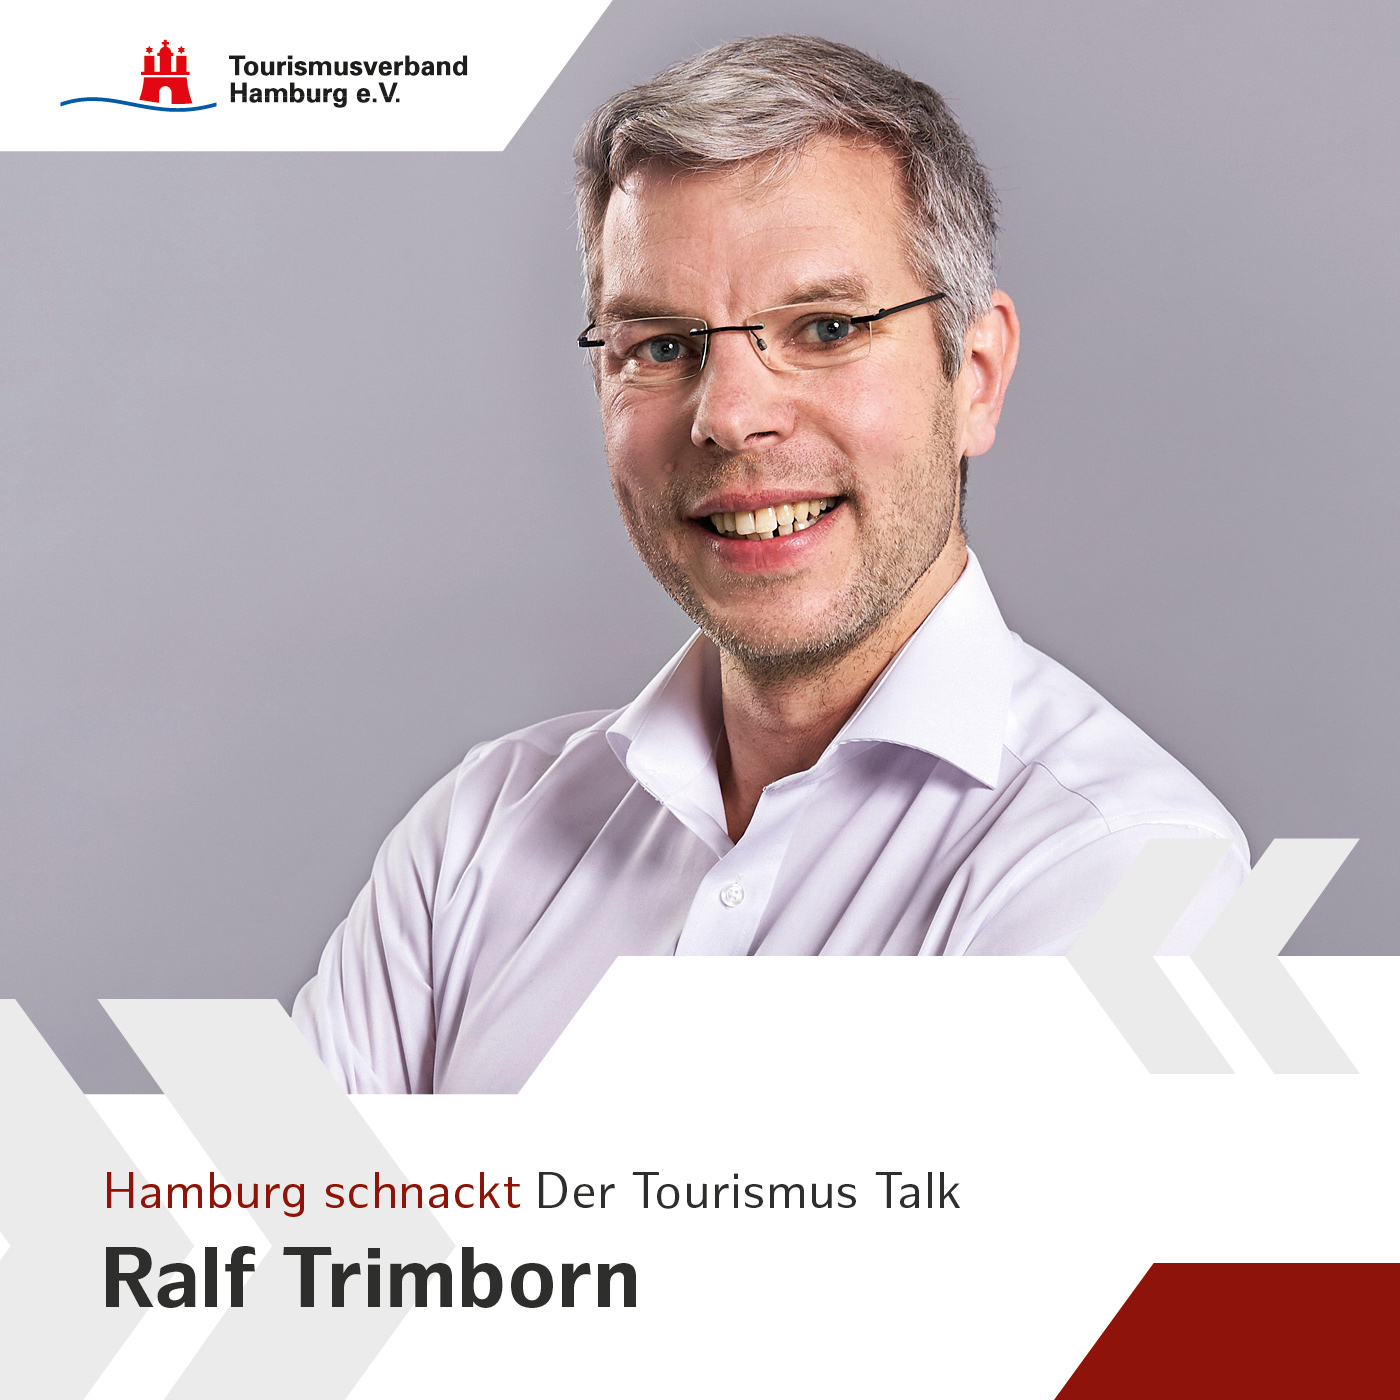 Hamburg schnackt mit Ralf Trimborn